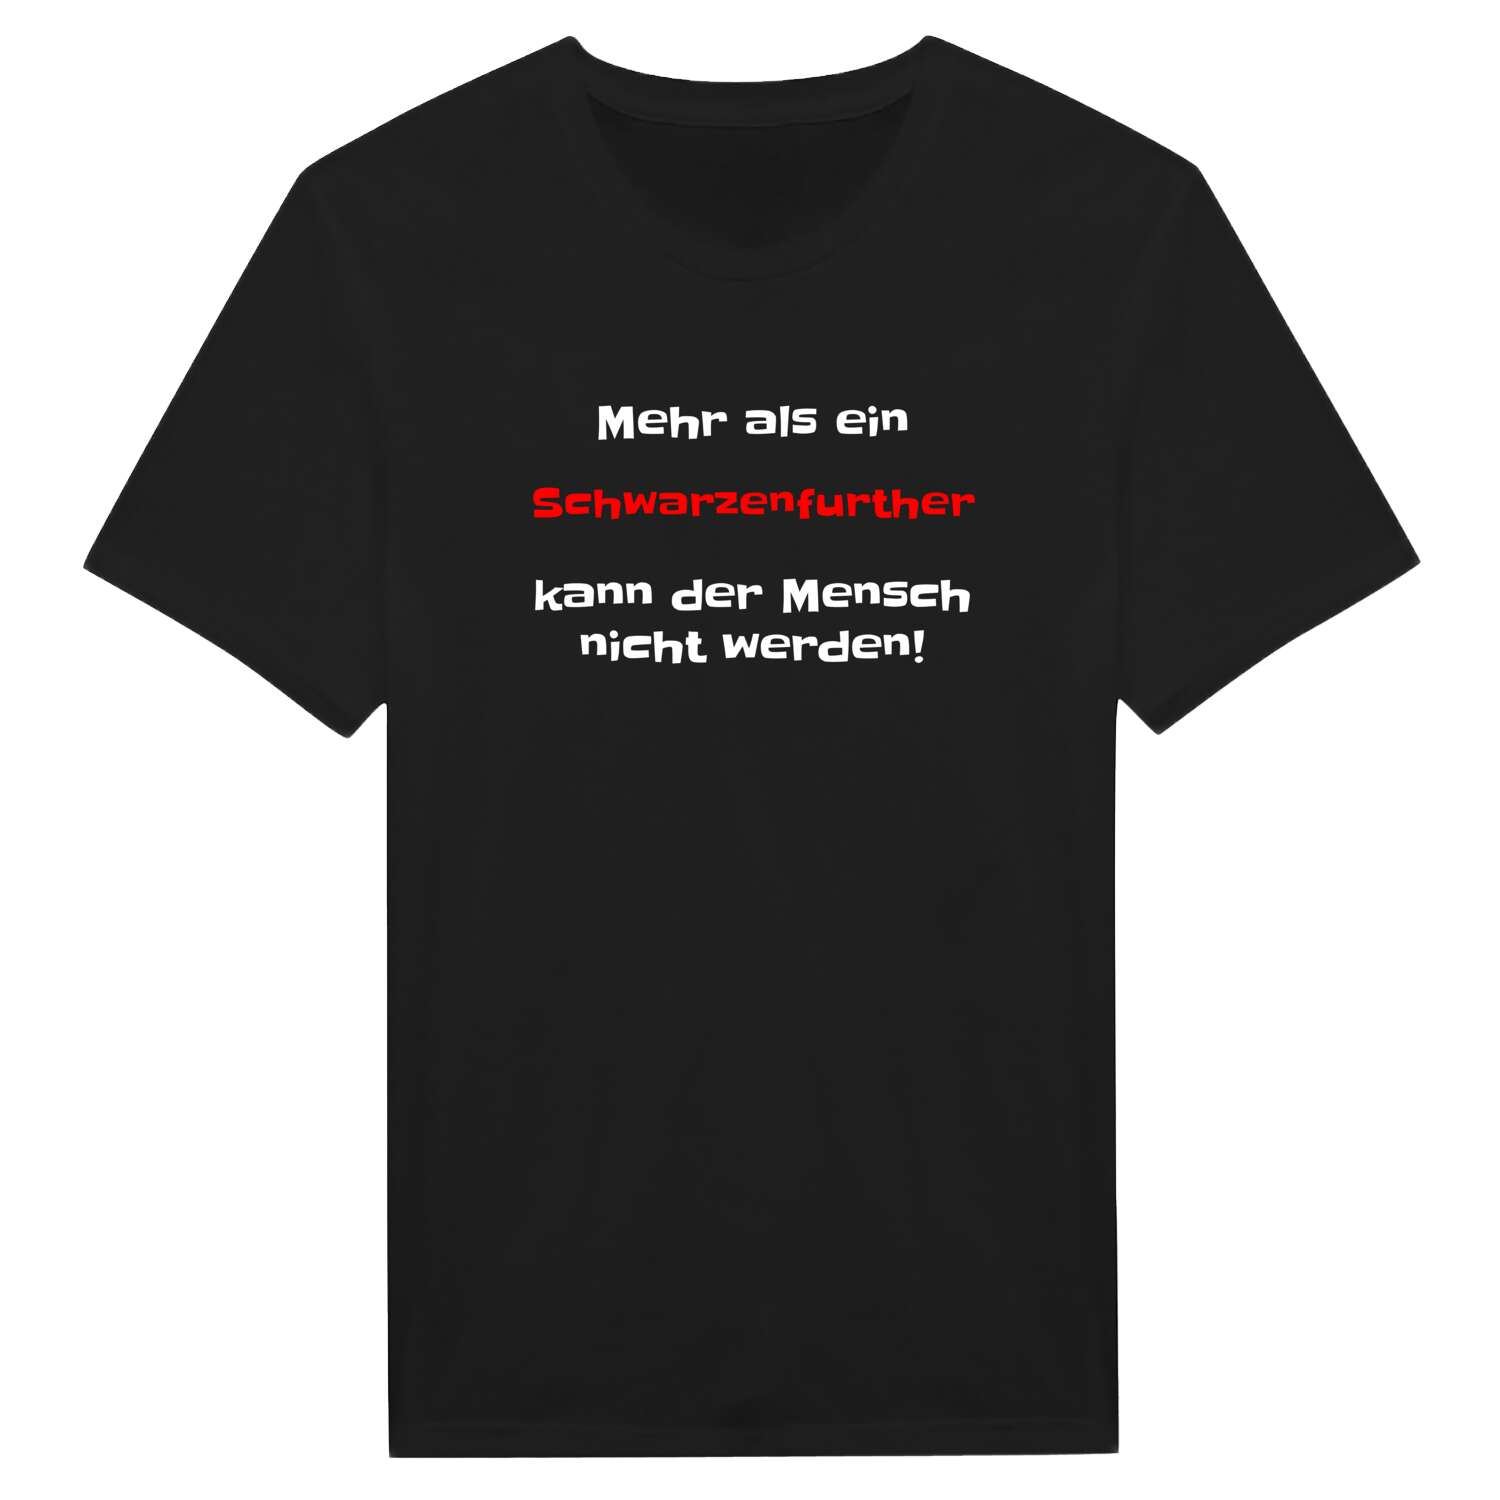 Schwarzenfurth T-Shirt »Mehr als ein«